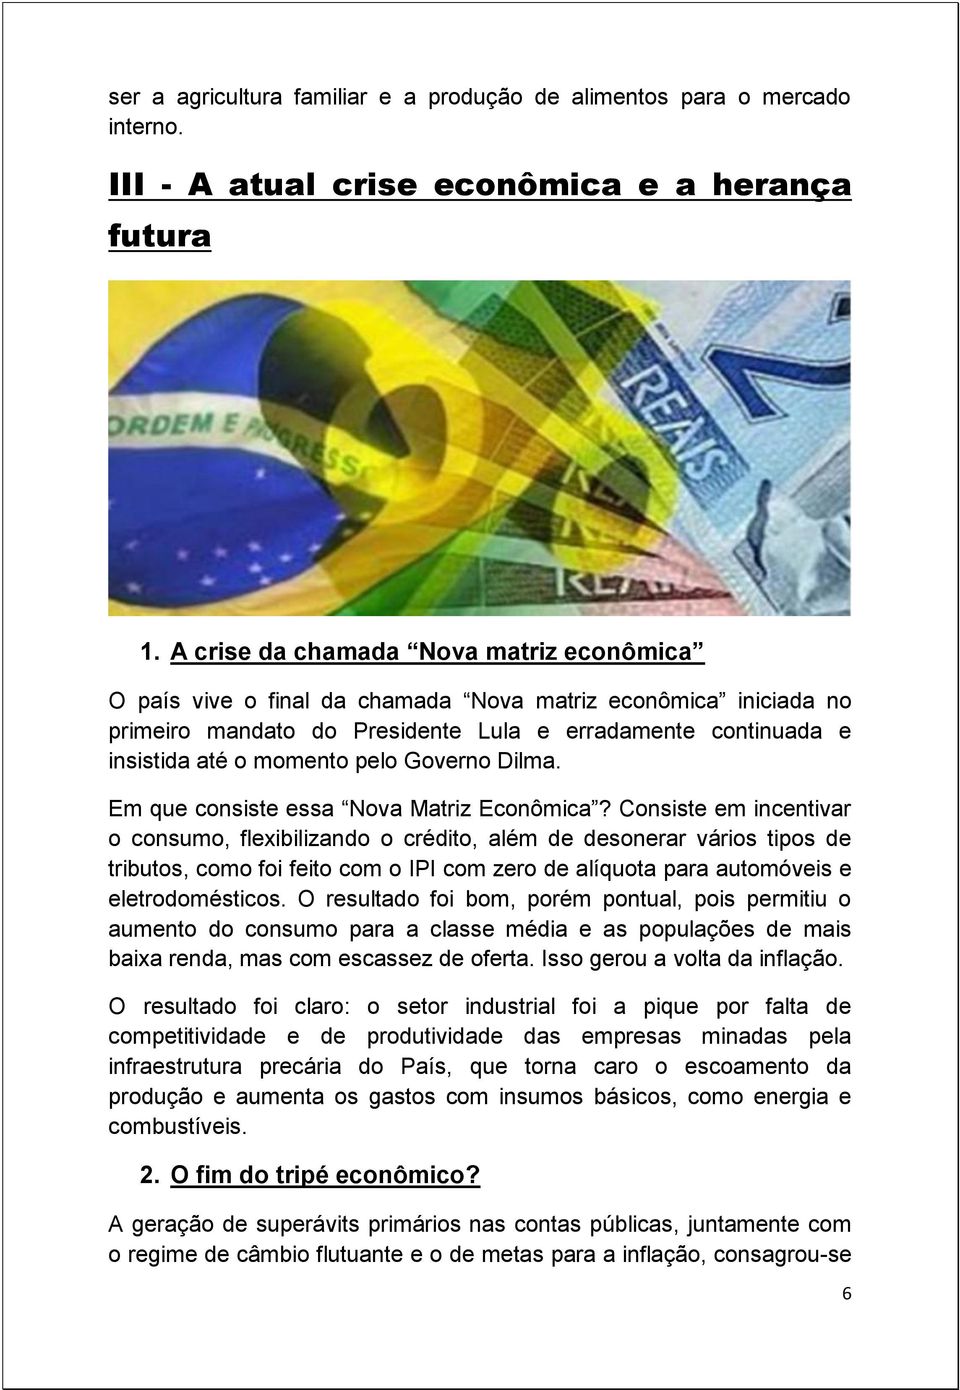 Governo Dilma. Em que consiste essa Nova Matriz Econômica?